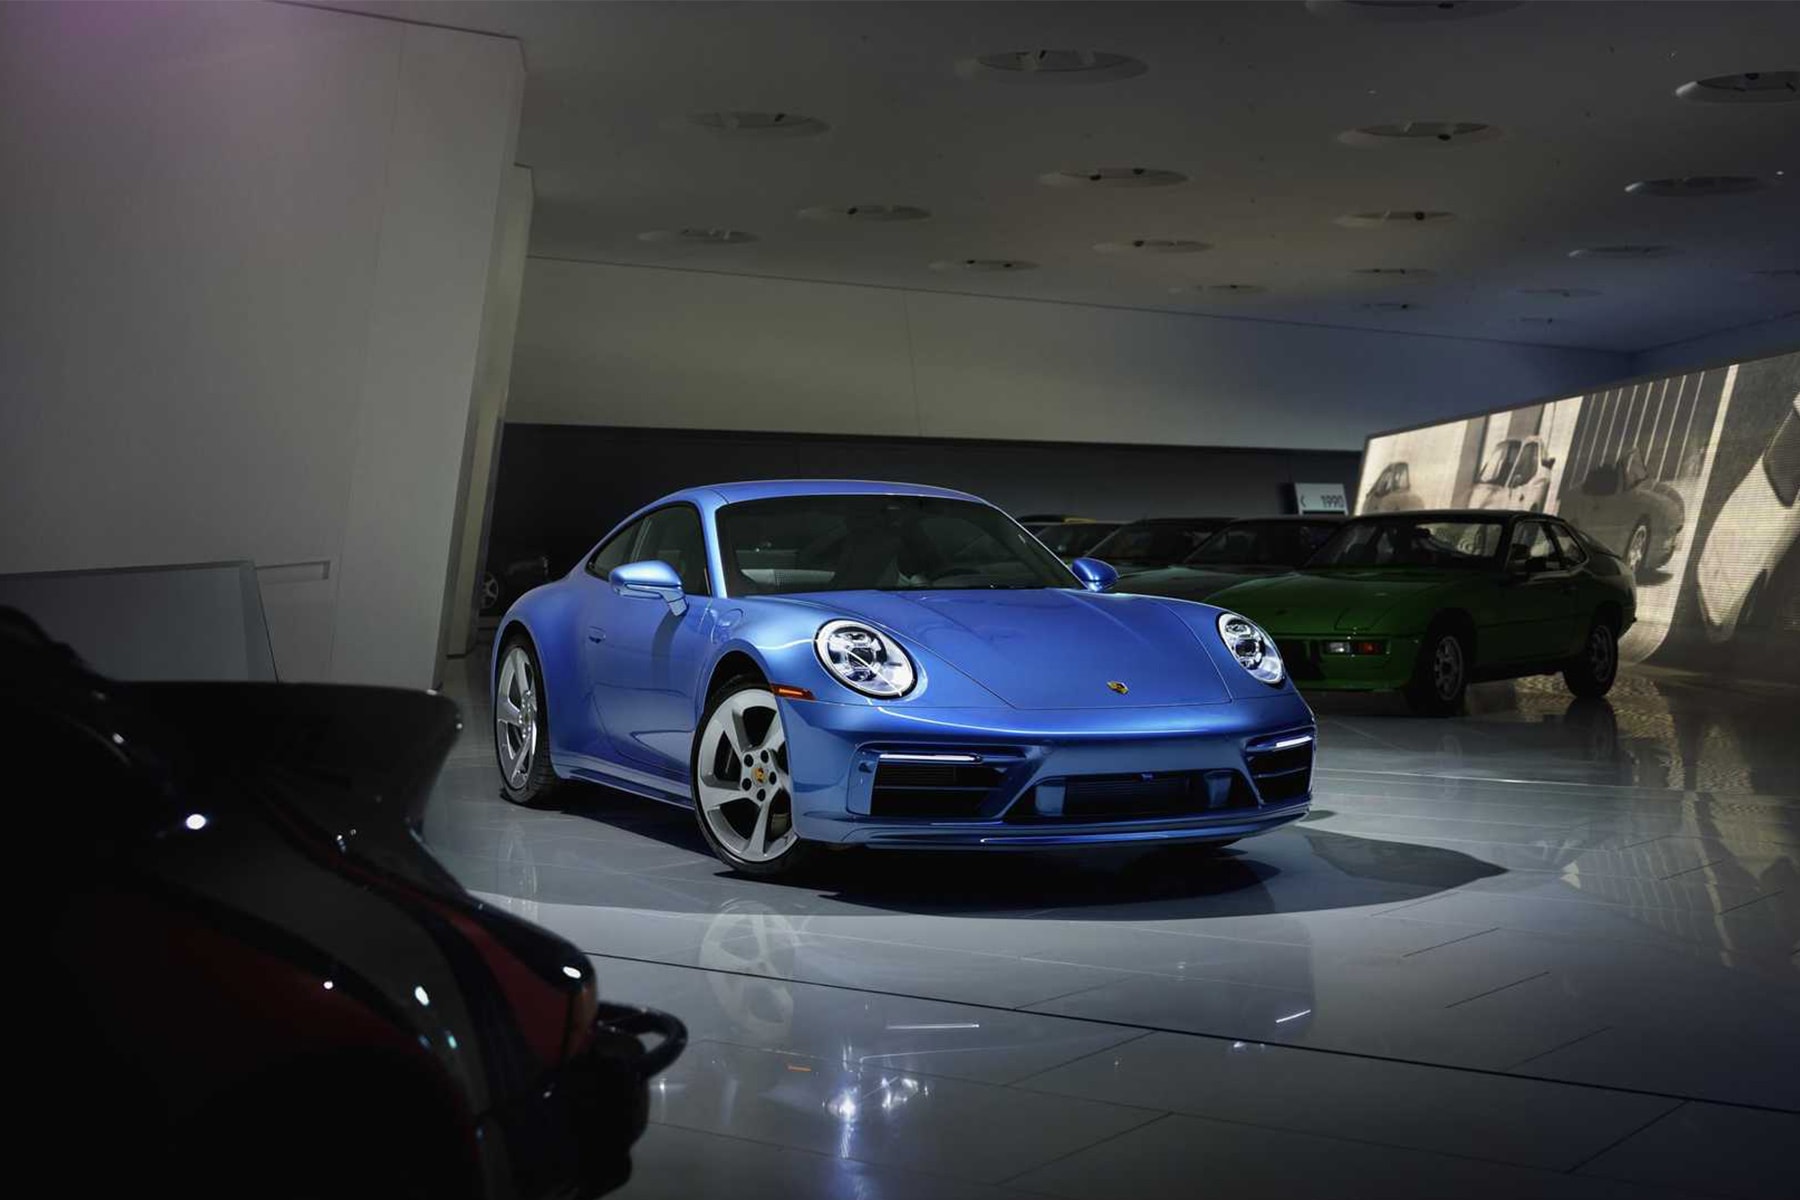 Porsche 實體化 Pixar 經典動畫電影《汽車總動員 Cars》「Sally」911 車款